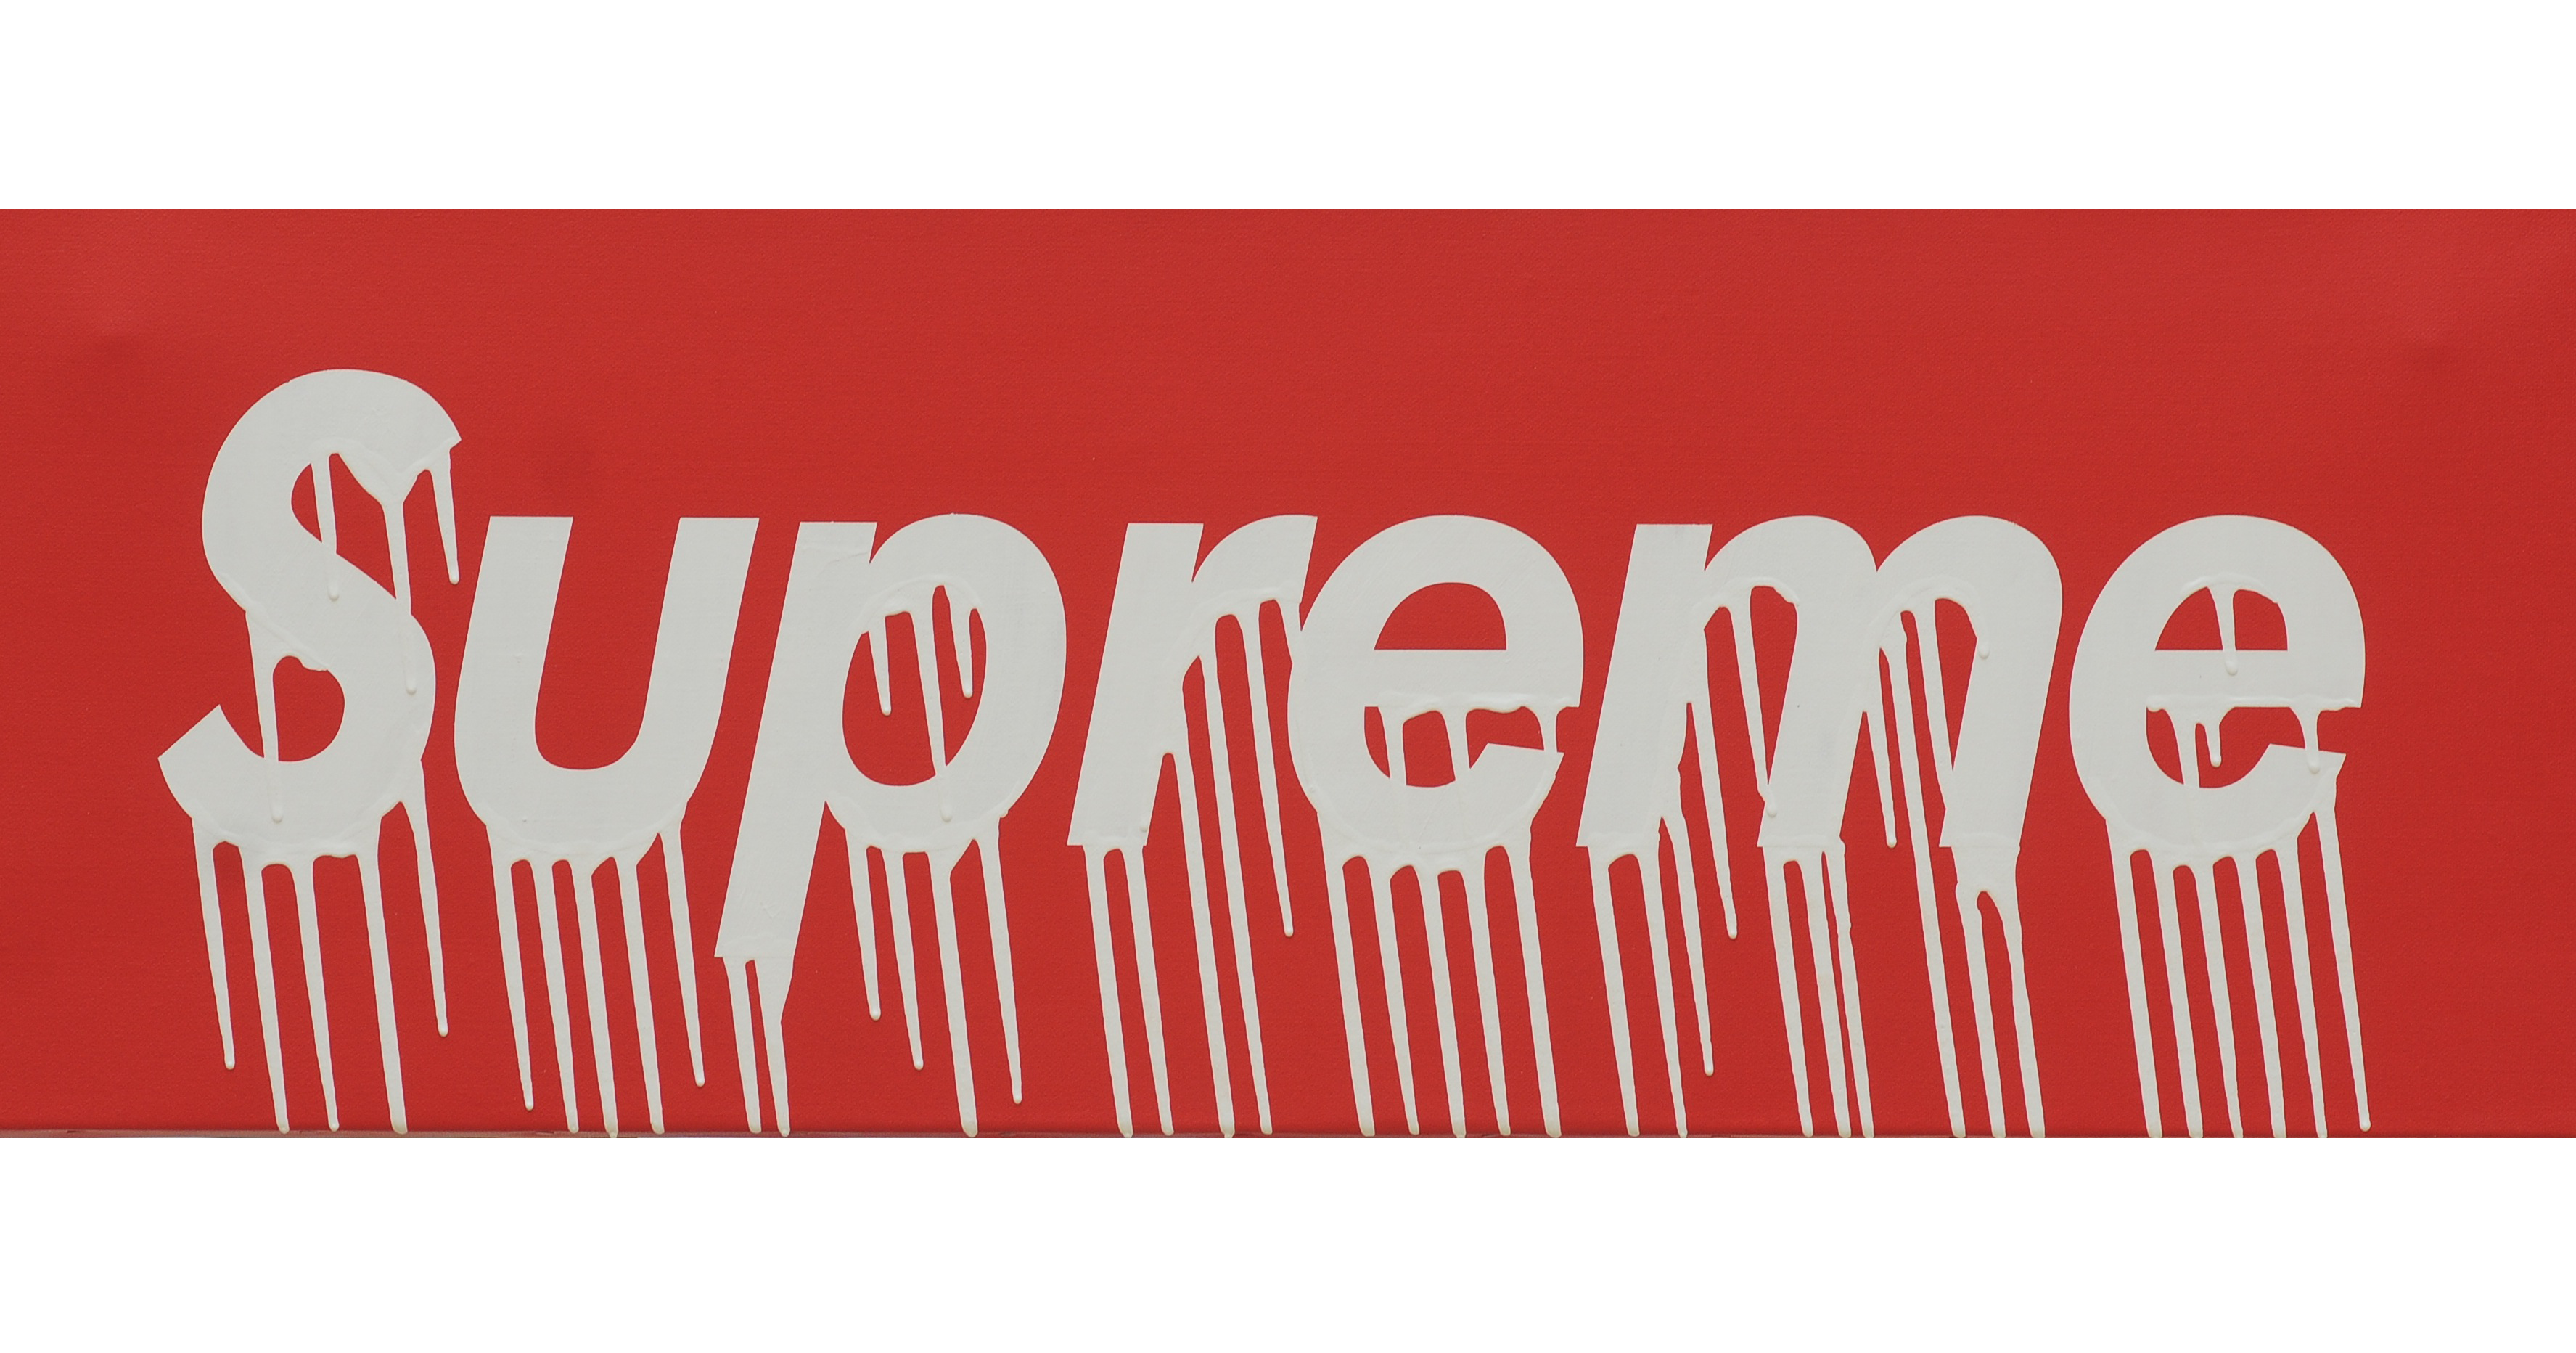 supreme box logo wallpaper,schriftart,text,banner,etikette,werbung